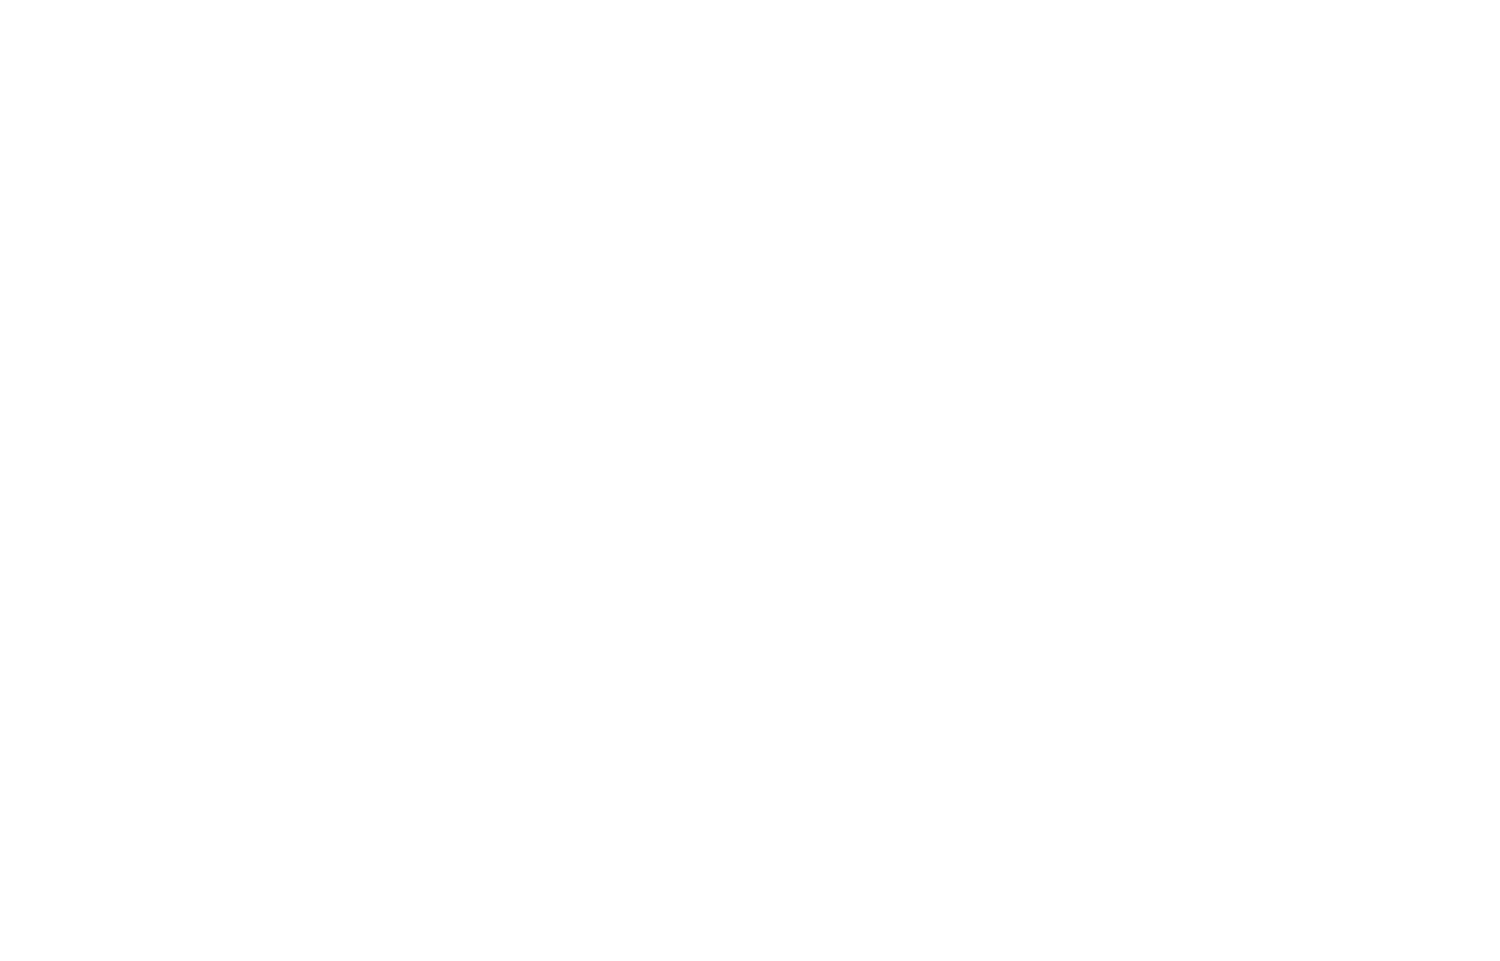 Delray Marketplace